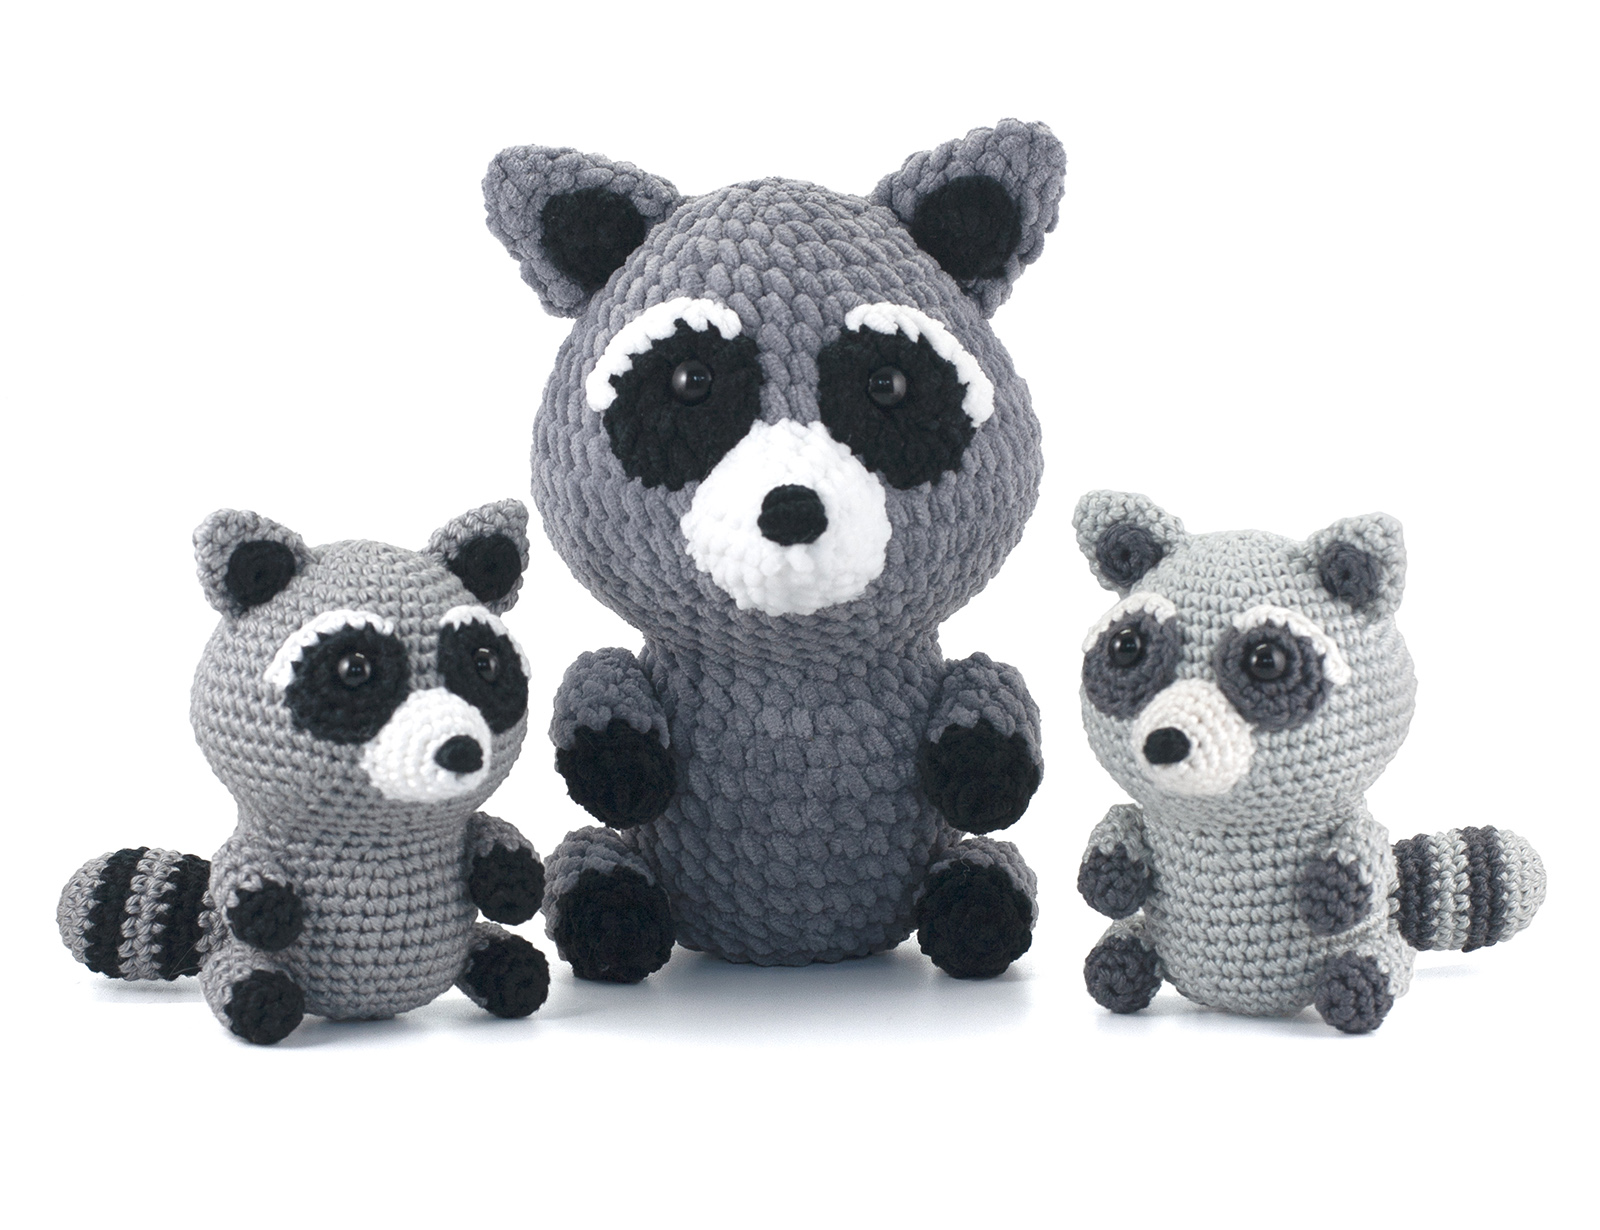 free-raccoon-crochet-pattern